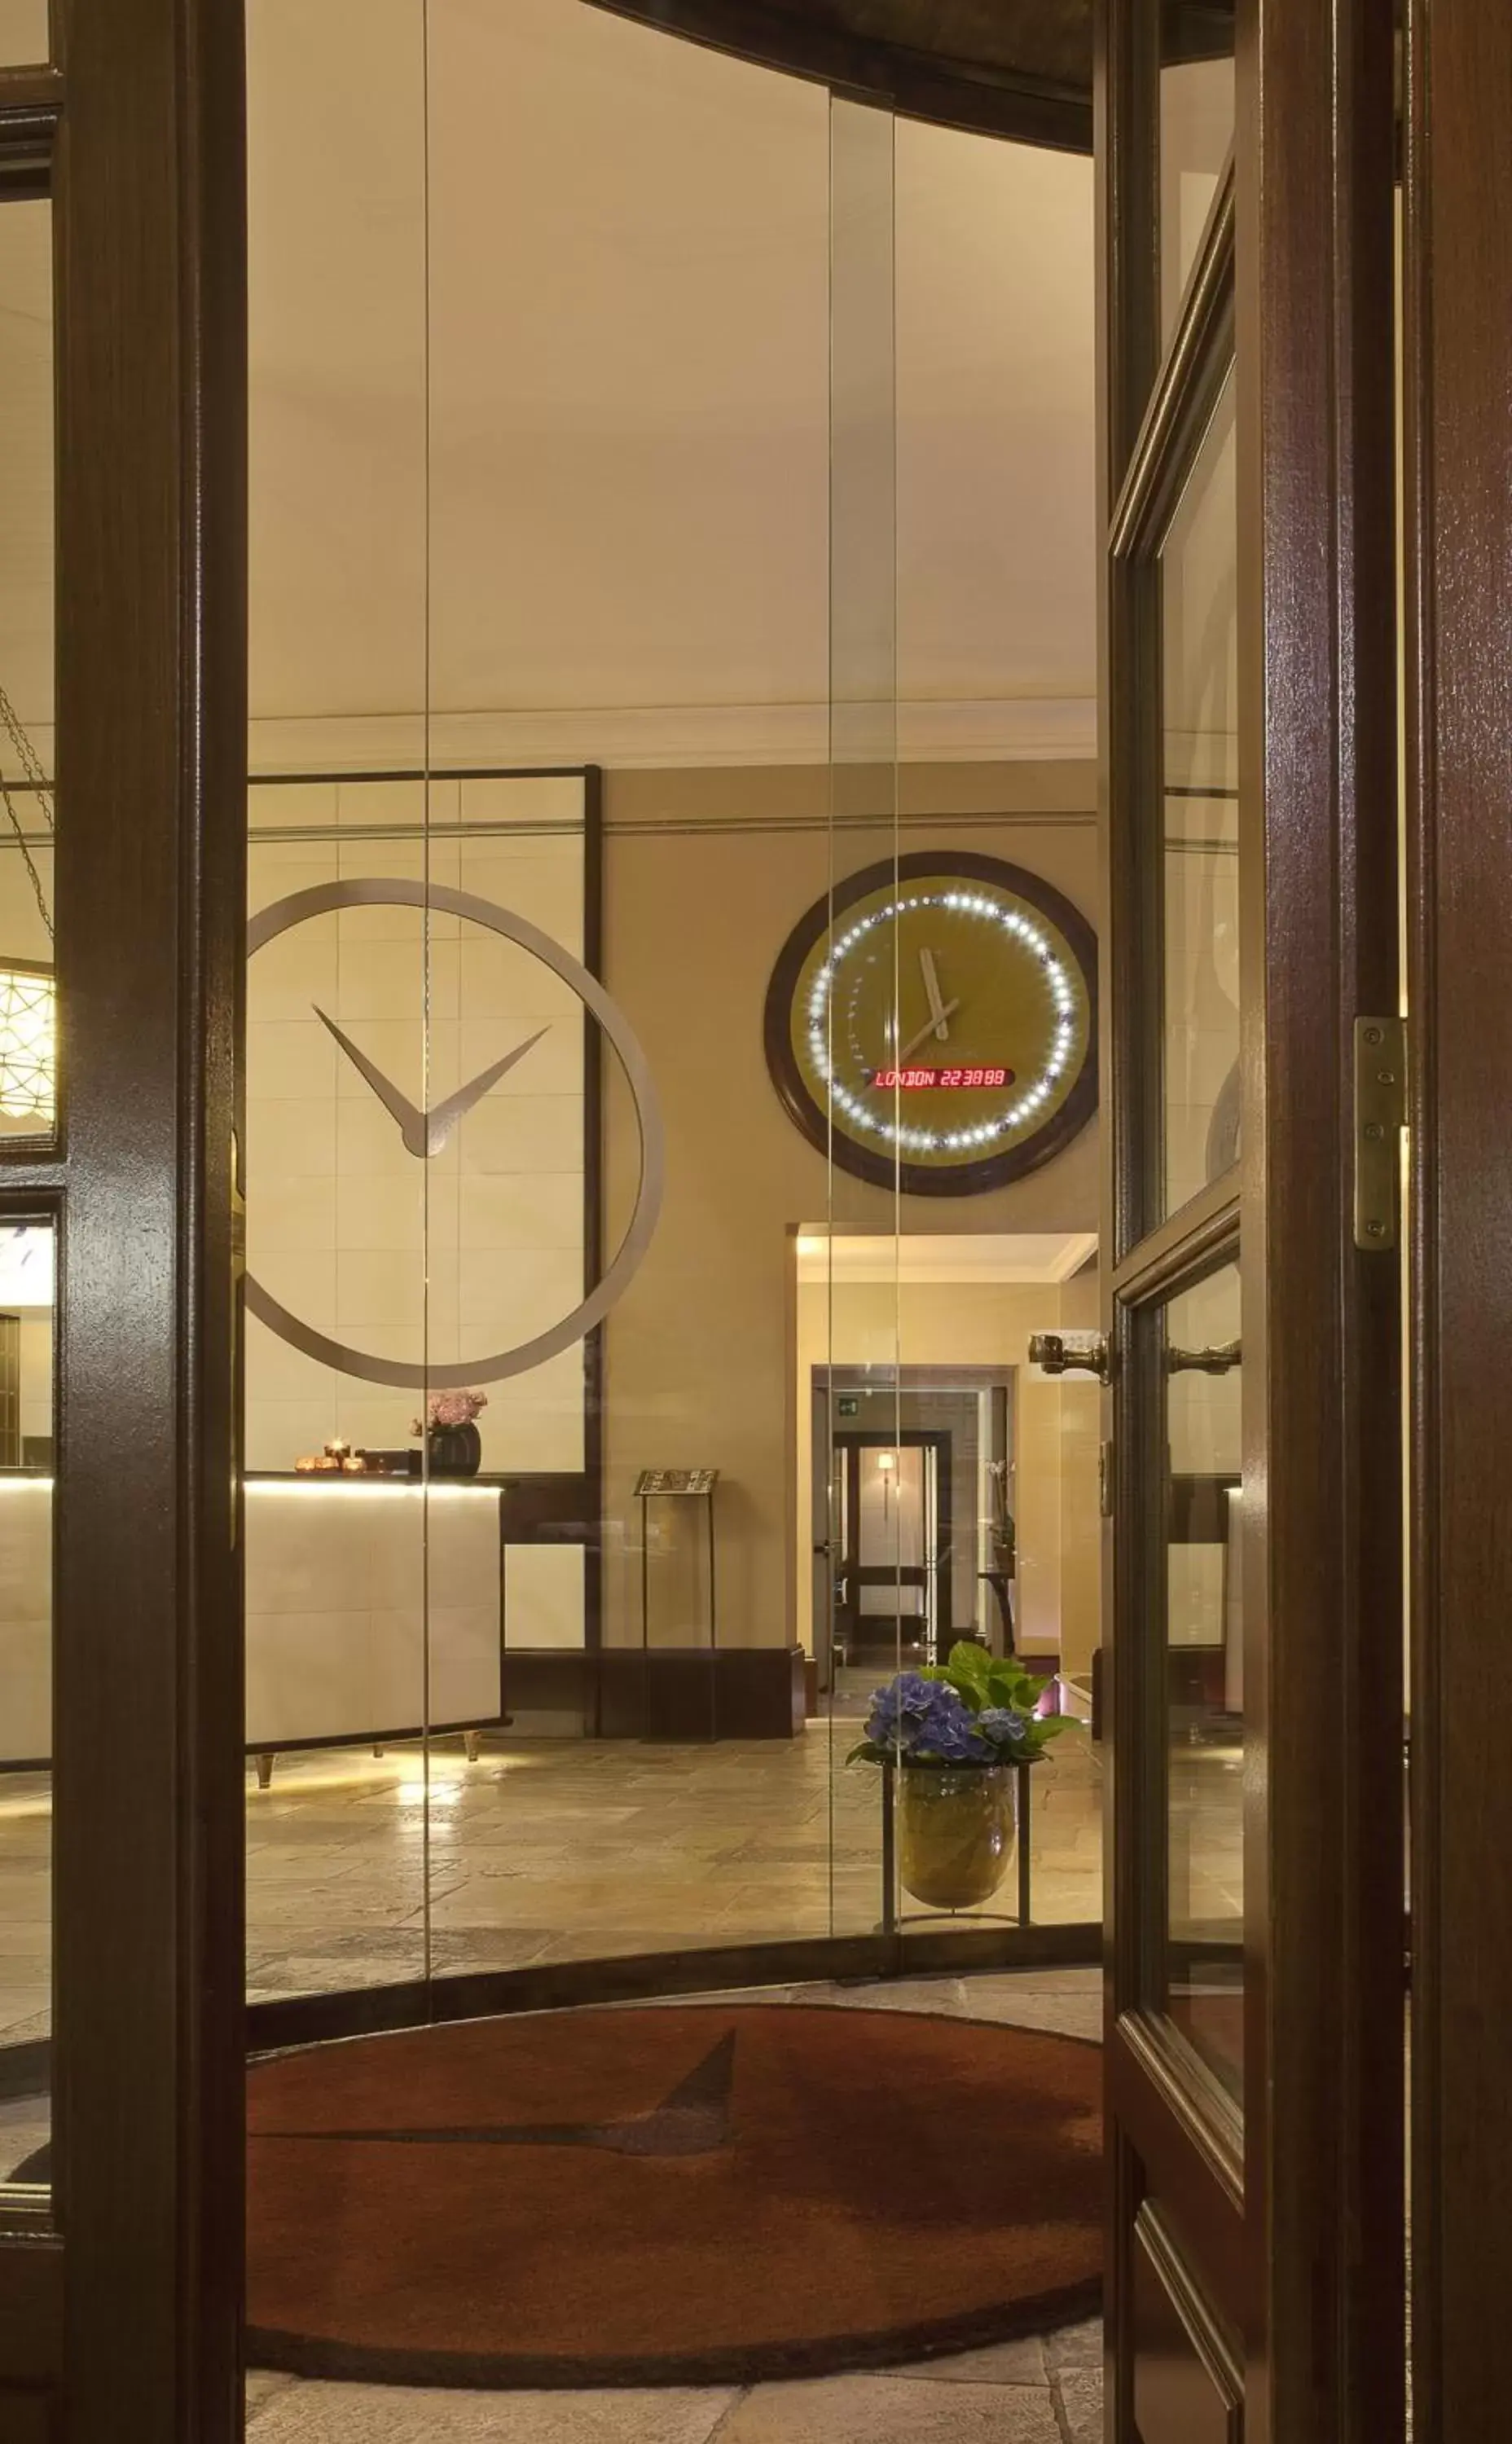 Lobby or reception in Hotel L'Orologio - WTB Hotels